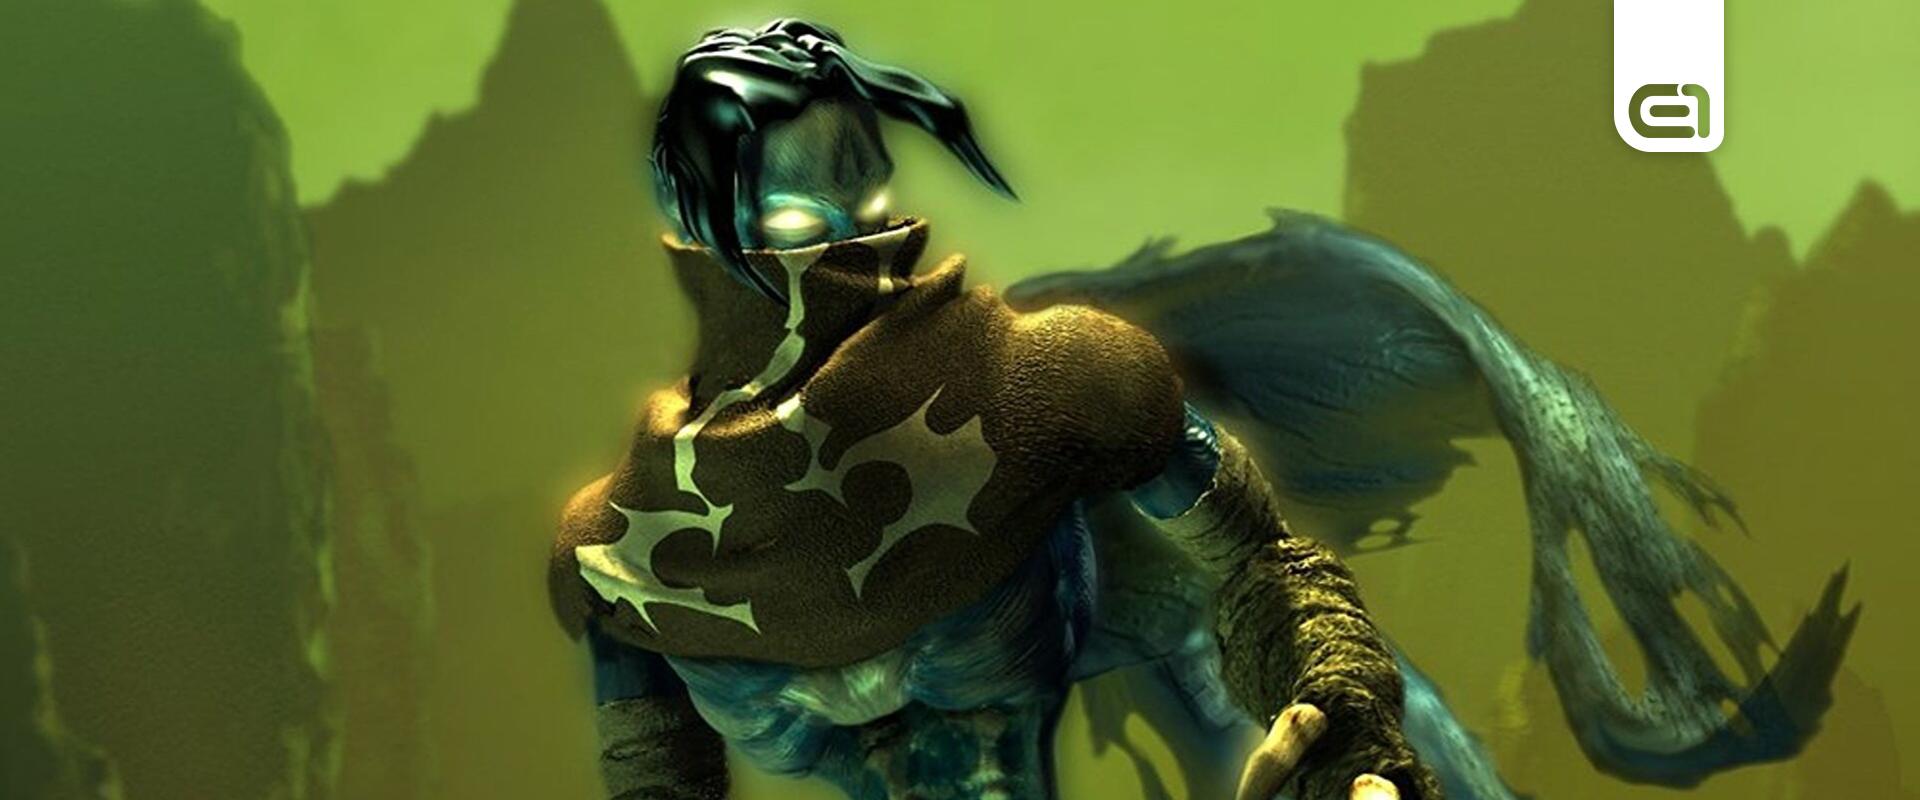 Elkészülhet a Legacy of Kain remake, miután meglepte a Crystal Dynamicsot a kérdőív eredménye